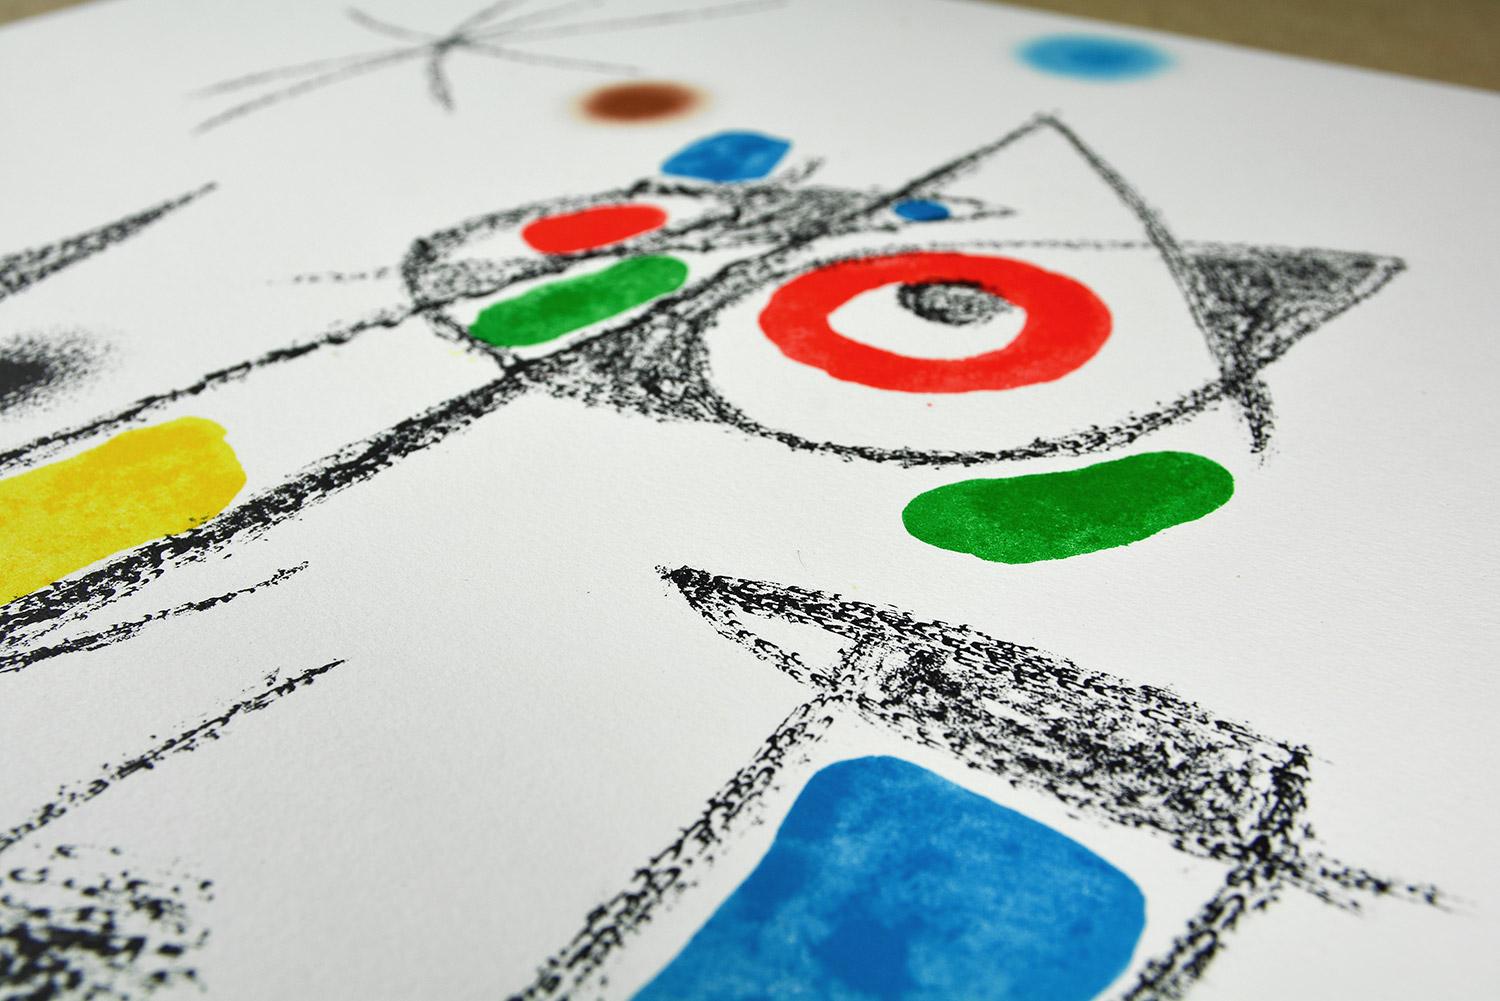 Joan Miró - Maravillas con variaciones acrósticas en el jardín de Miró XII
Date of creation: 1975
Medium: Lithograph on Gvarro paper
Edition: 1500
Size: 49,5 x 35,5 cm
Observations:
Lithograph on Gvarro paper plate signed. Edited by Polígrafa,